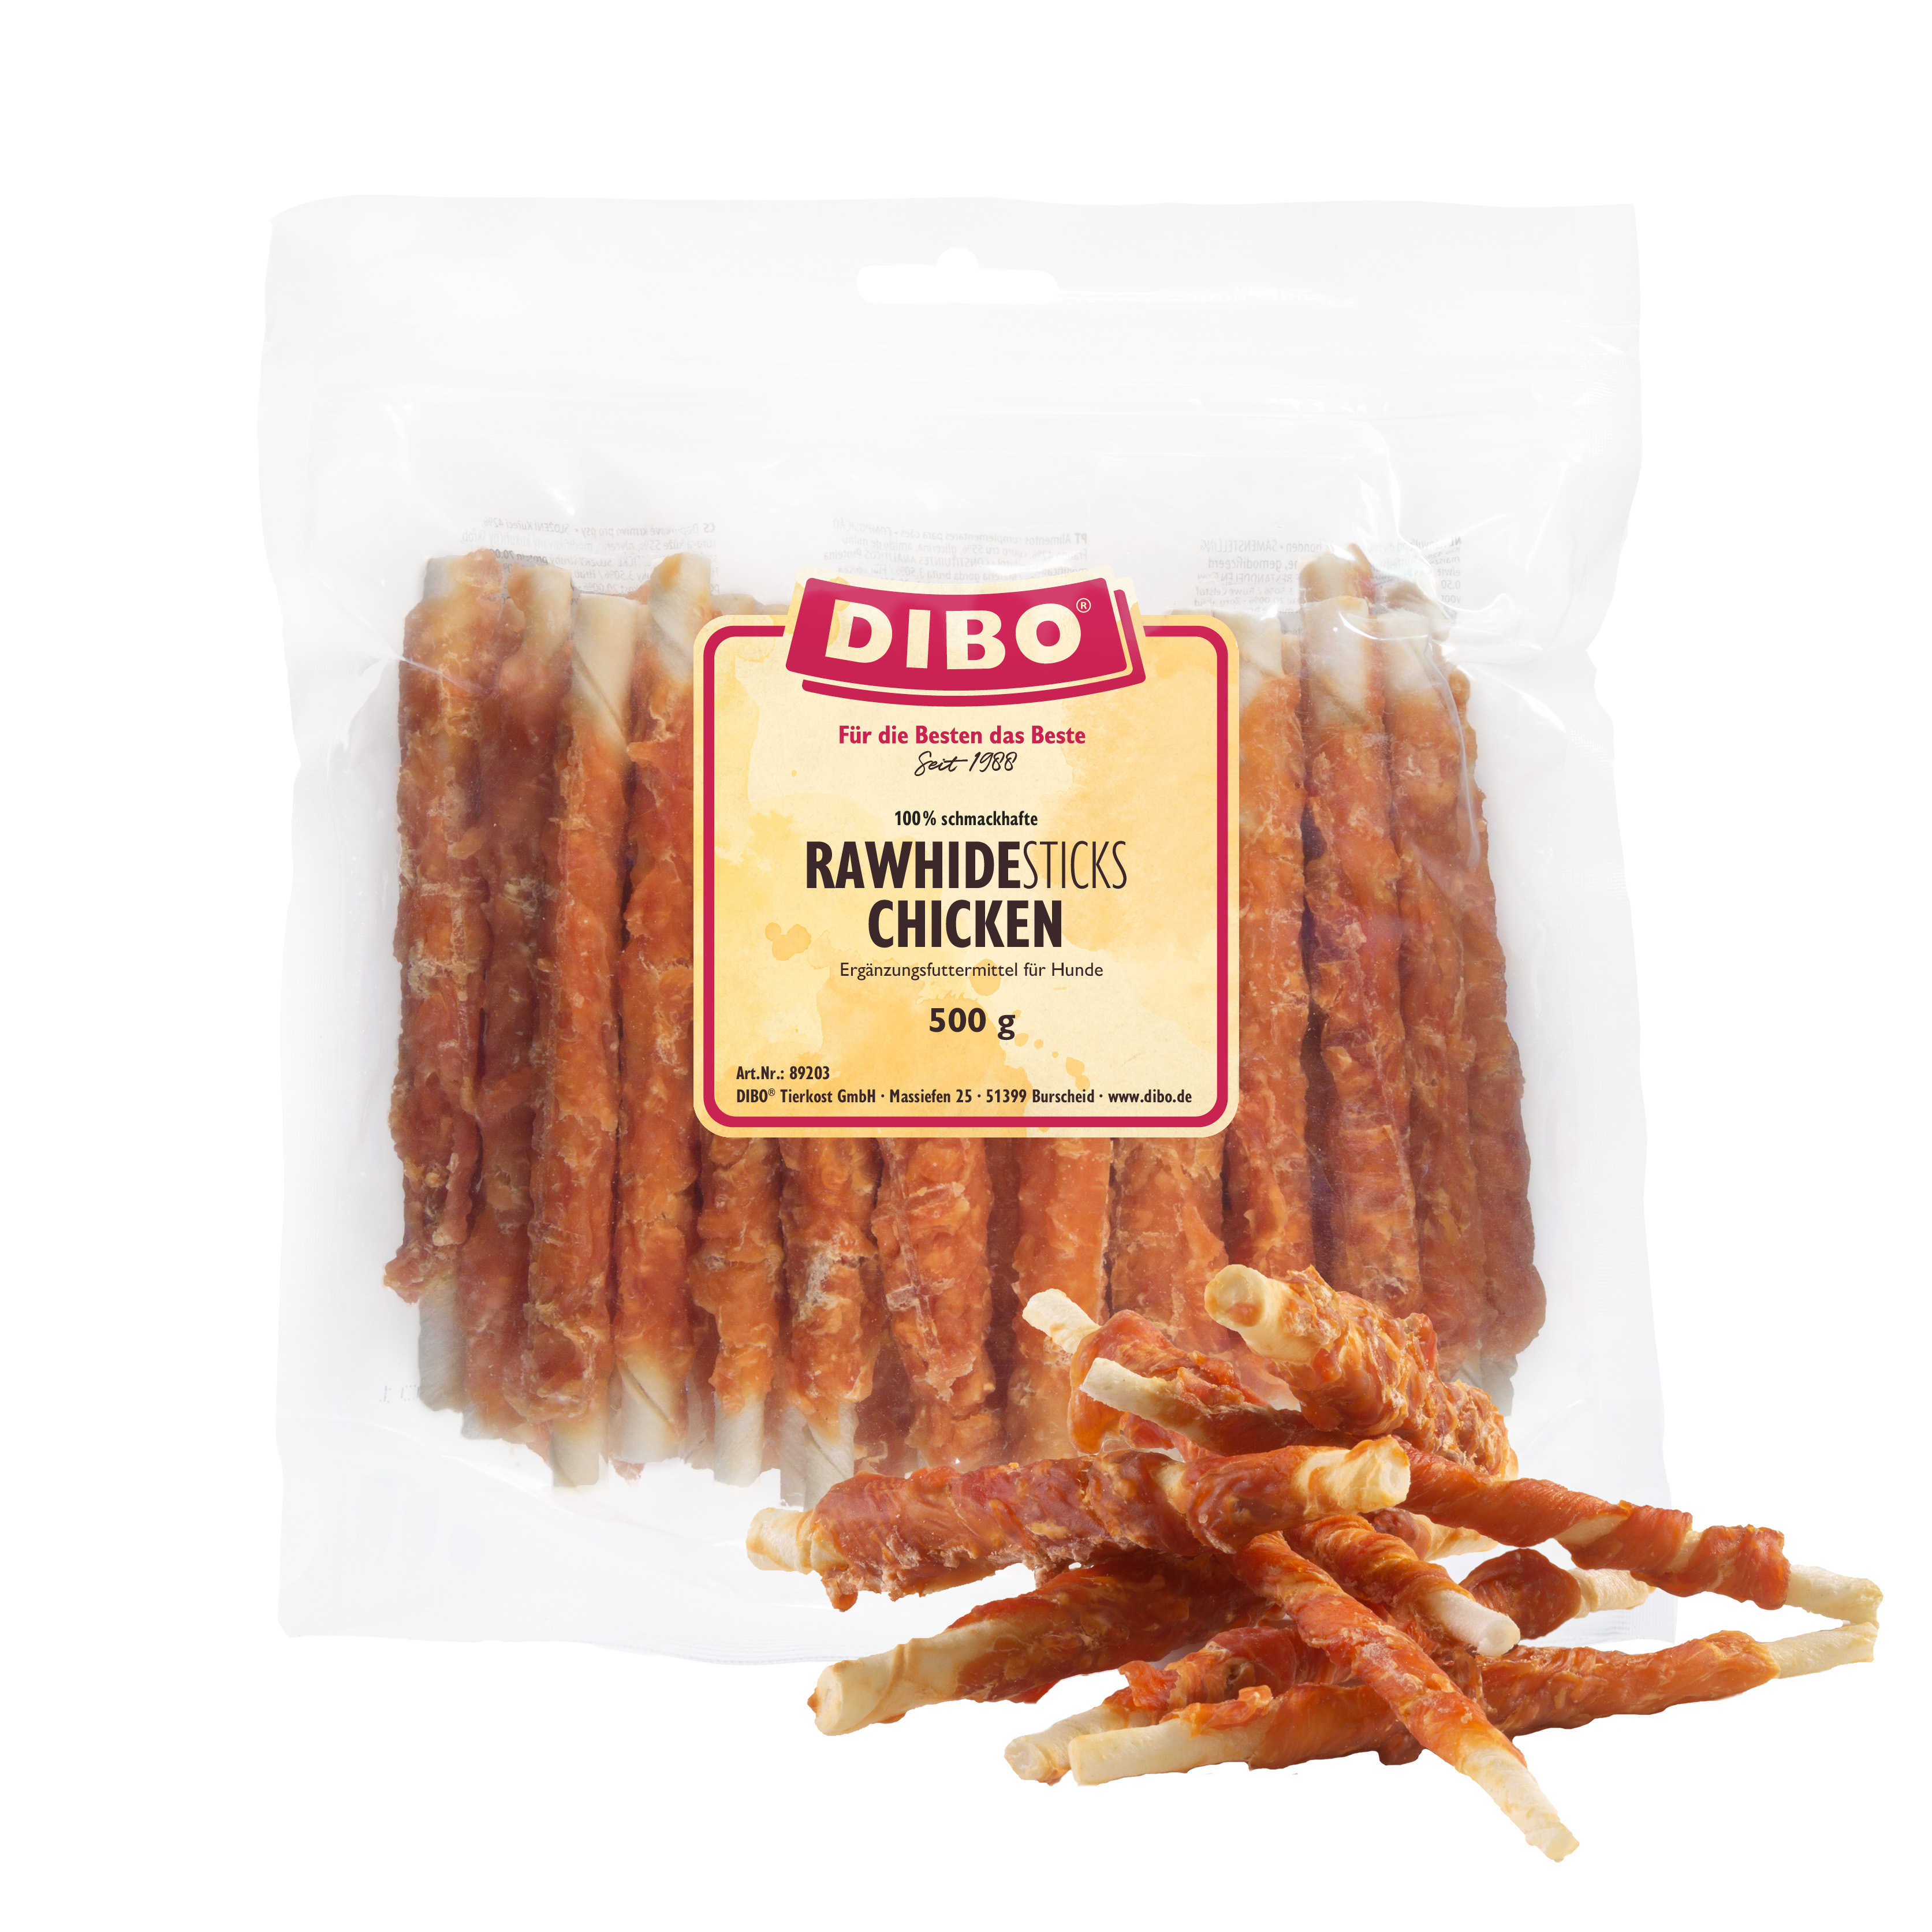 DIBO RawHide Sticks Chicken, 500g-Beutel